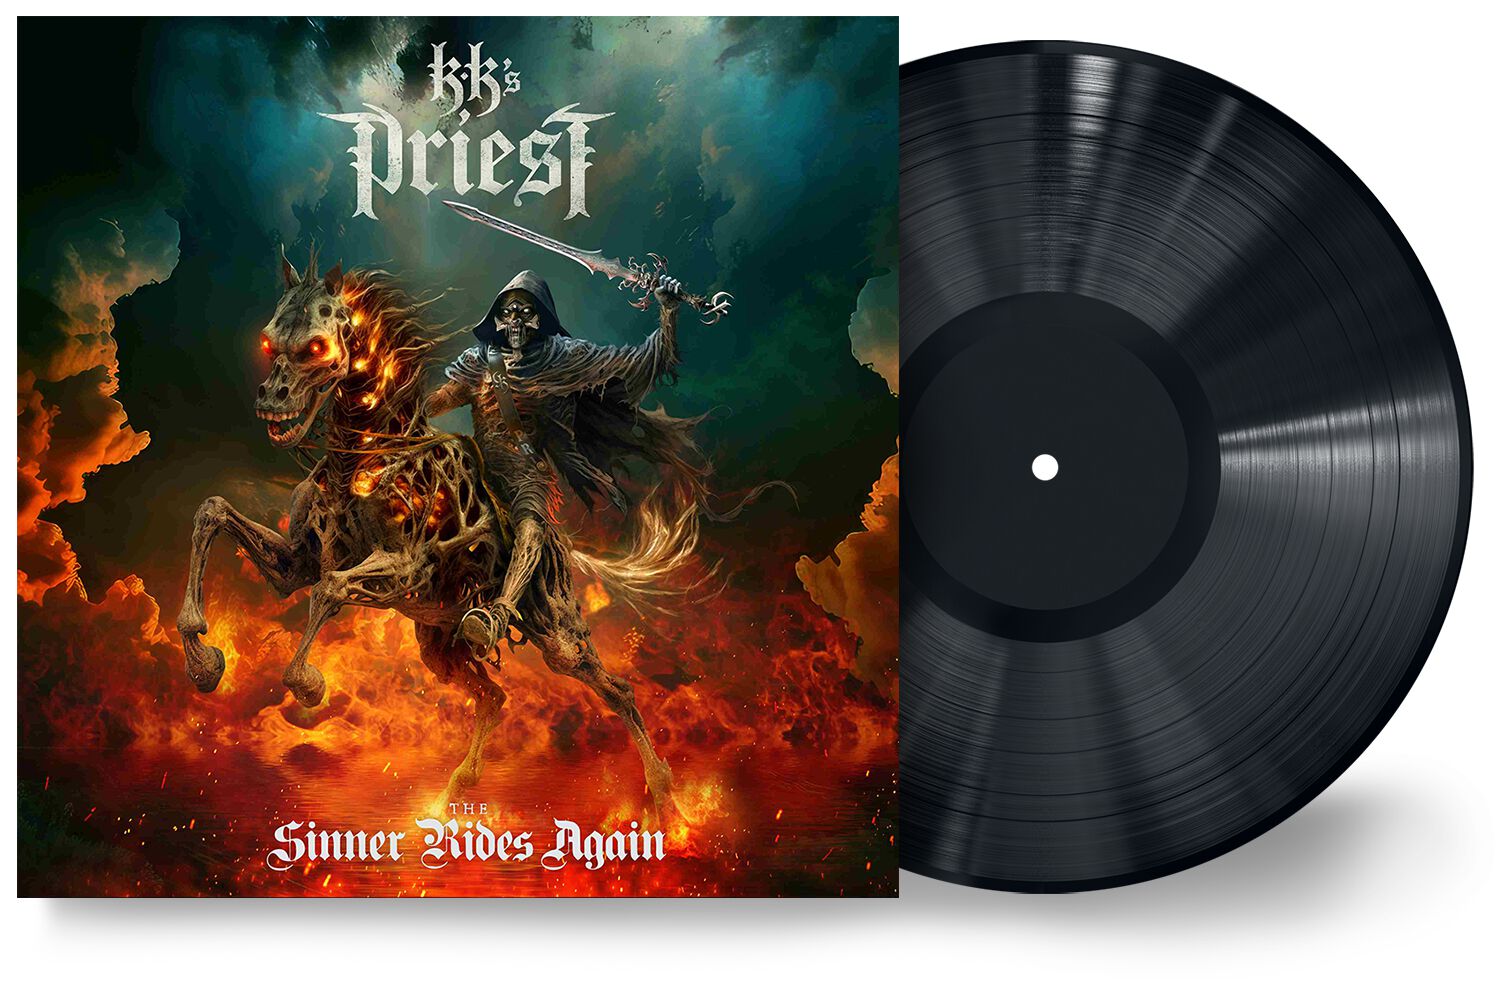 The sinner rides again von KK's Priest - LP (Gatefold)